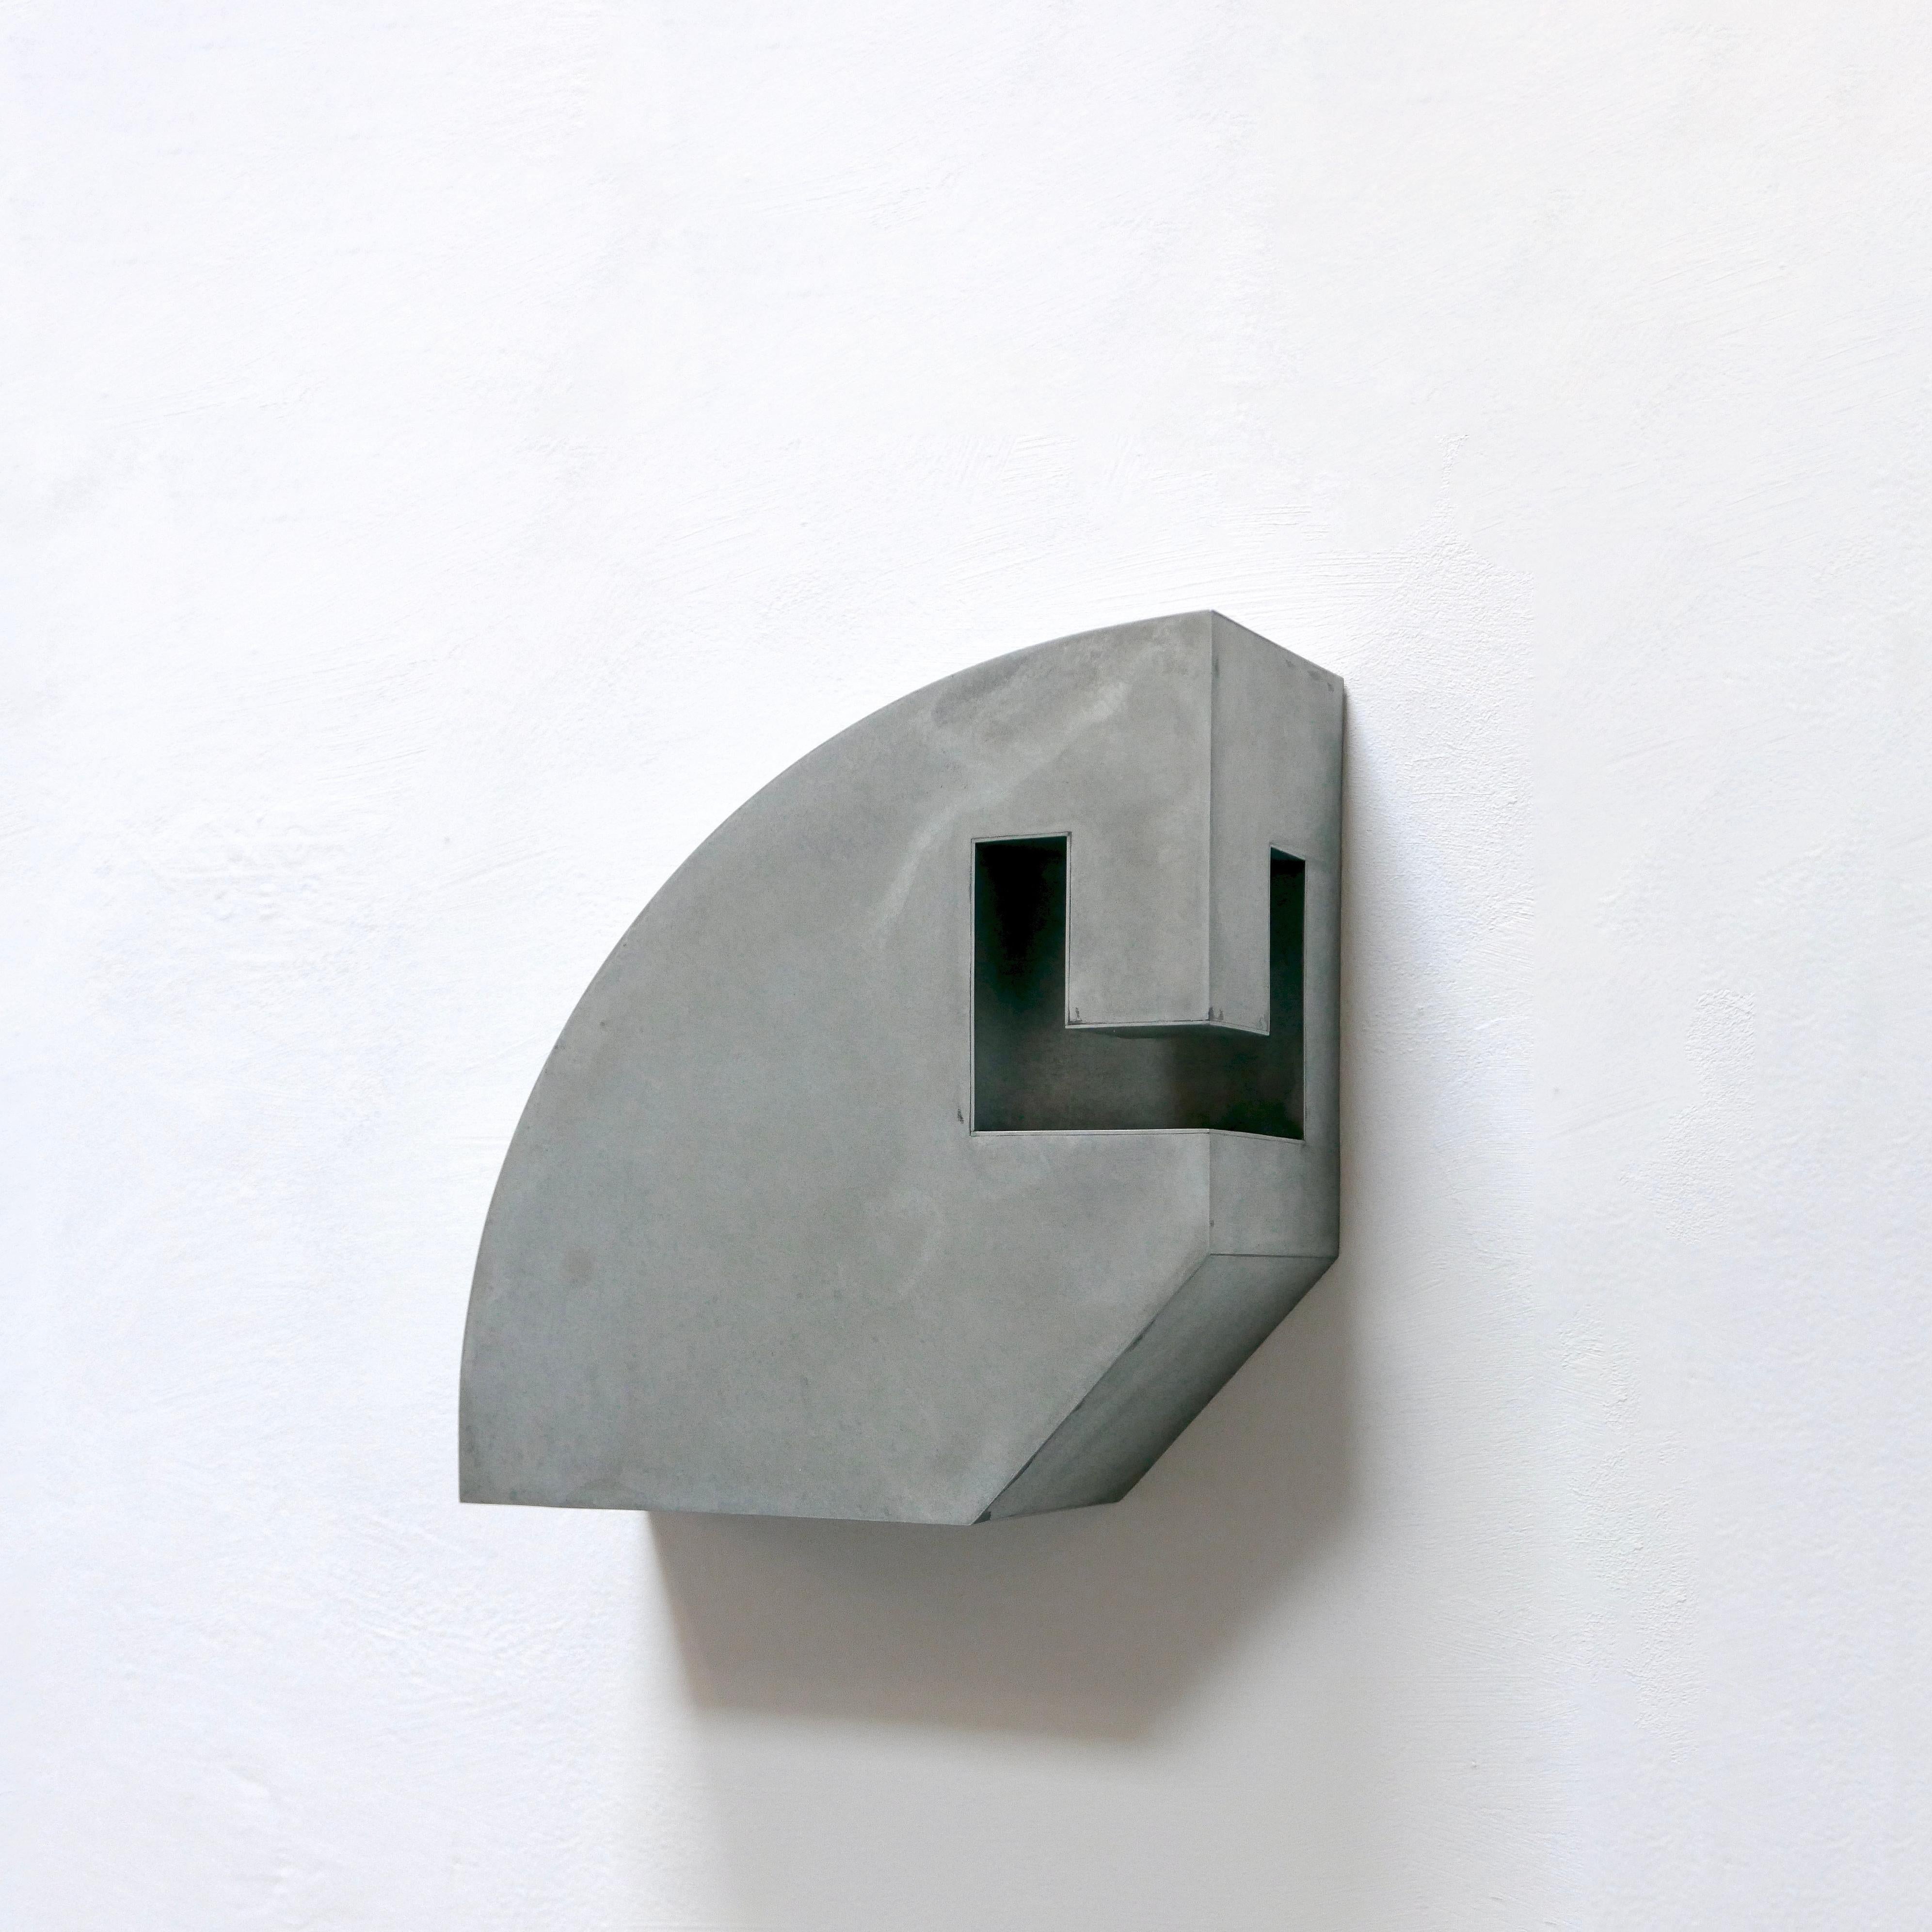 Simon Oud (né en 1958, Pays-Bas) crée des sculptures principalement en zinc, parfois combinées à des éléments en laiton. Oud n'est pas un sculpteur, car il ne taille pas dans la masse. Il ne part pas d'un volume dont il prélève des pièces, mais il